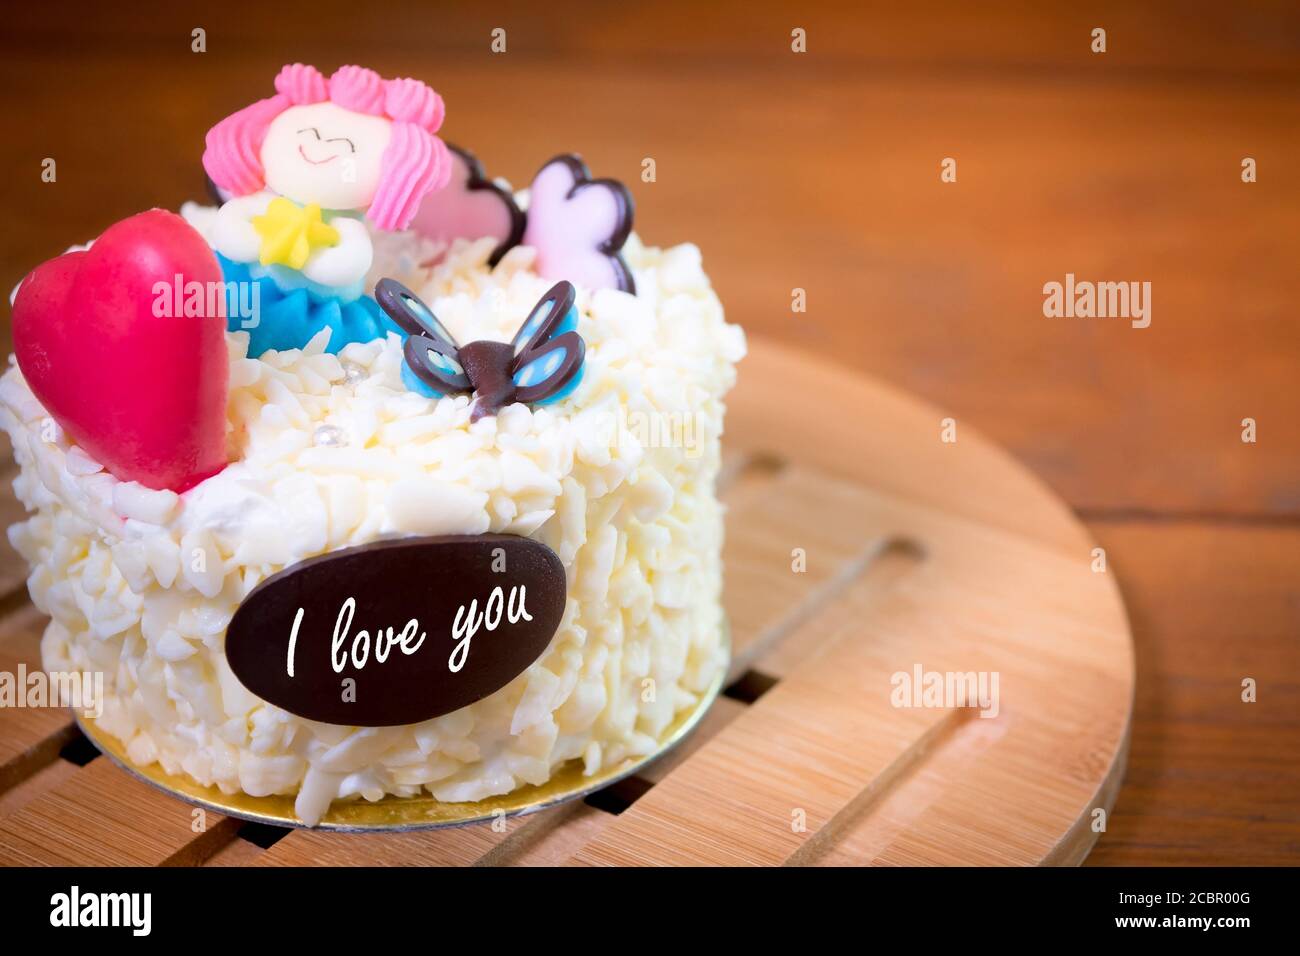 Kuchen Grußkarte Hintergrund. Weiß Geburtstag Vanillekuchen mit niedlichen dekorieren und Tag ich liebe dich auf dem Tisch Stockfoto